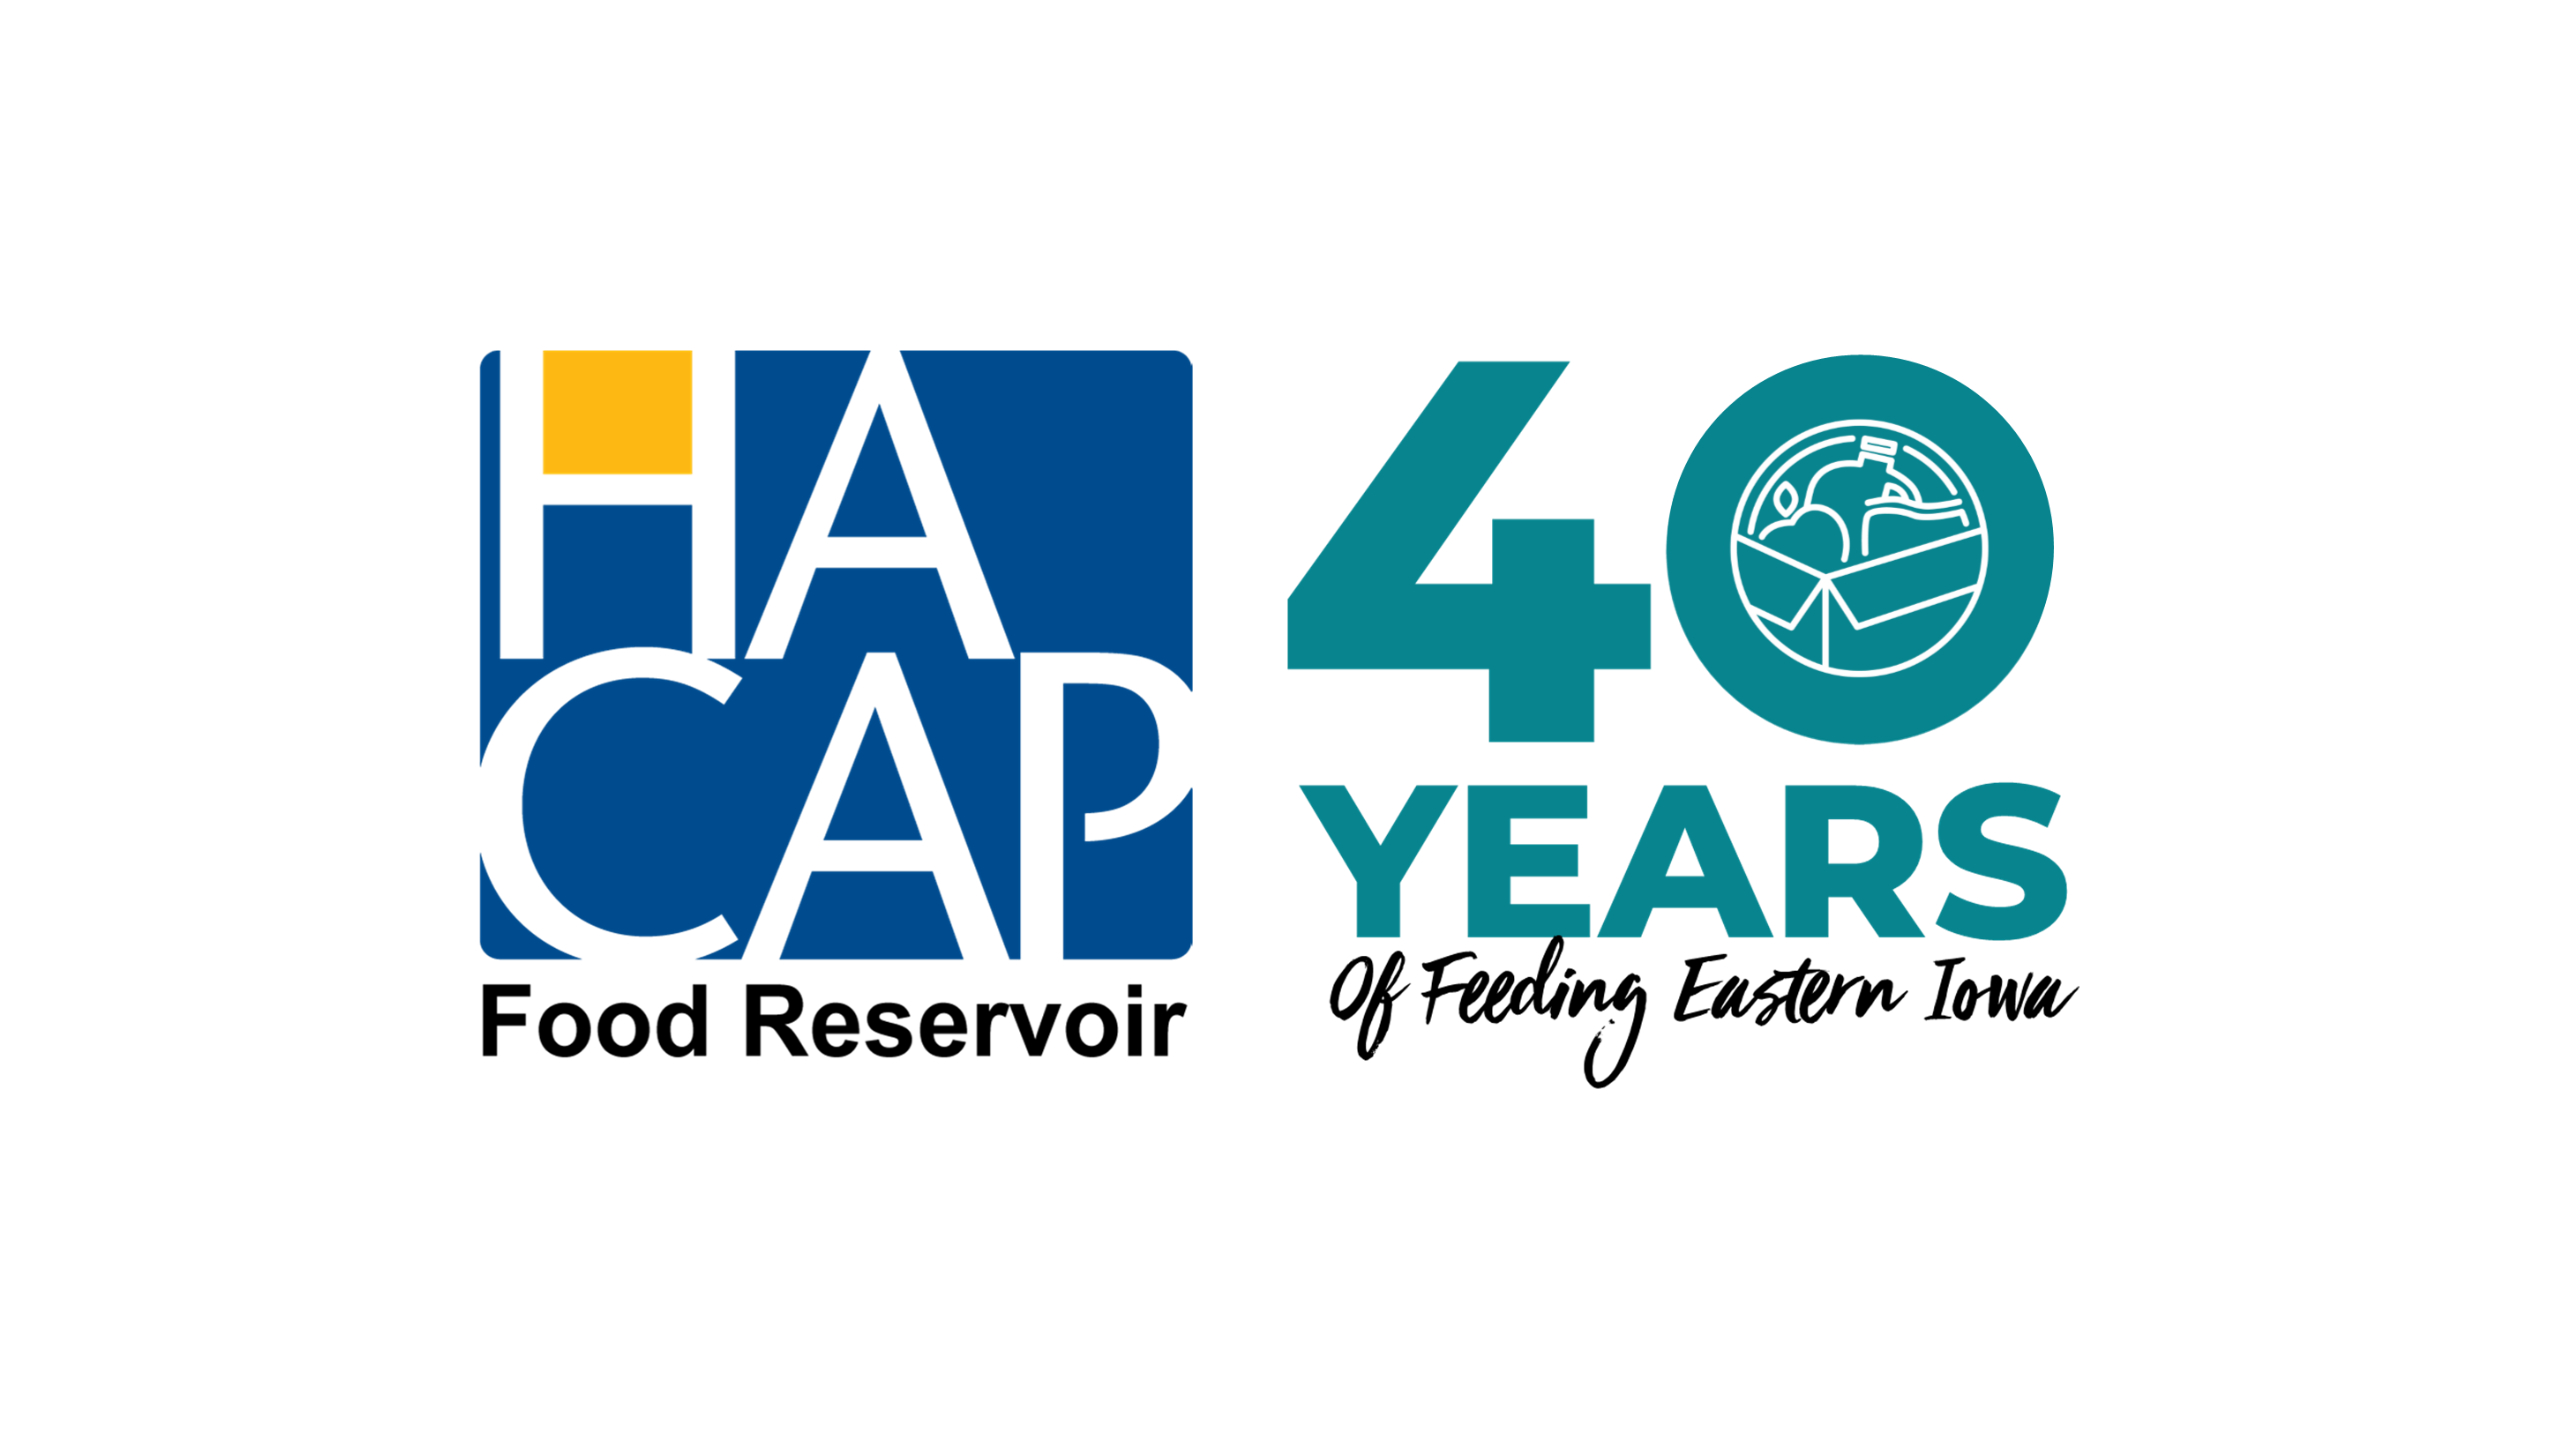 HACAP Food Reservoir Celebrating 40 Years of Feeding Eastern Iowa